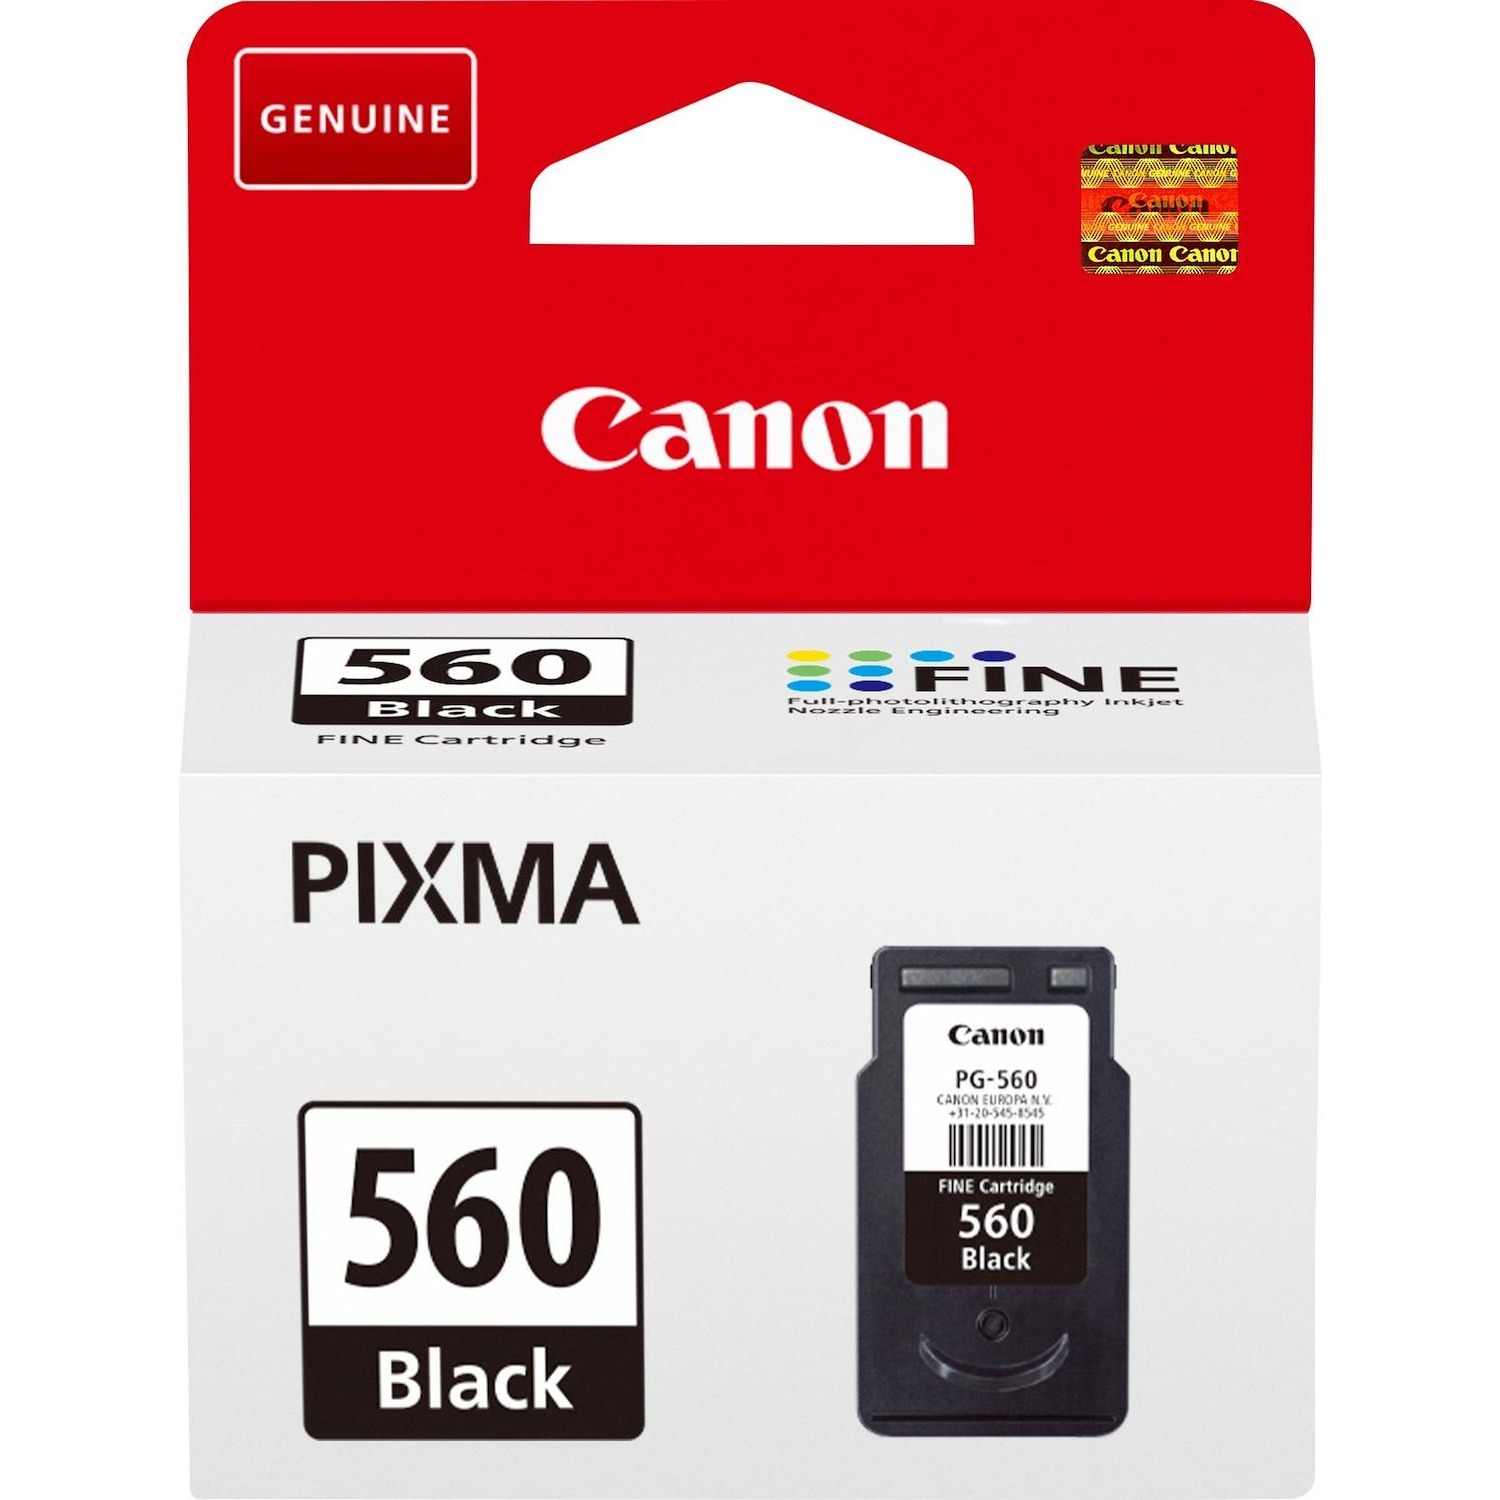 Immagine per Cartuccia Canon PG-560 nera per TS7450A da DIMOStore